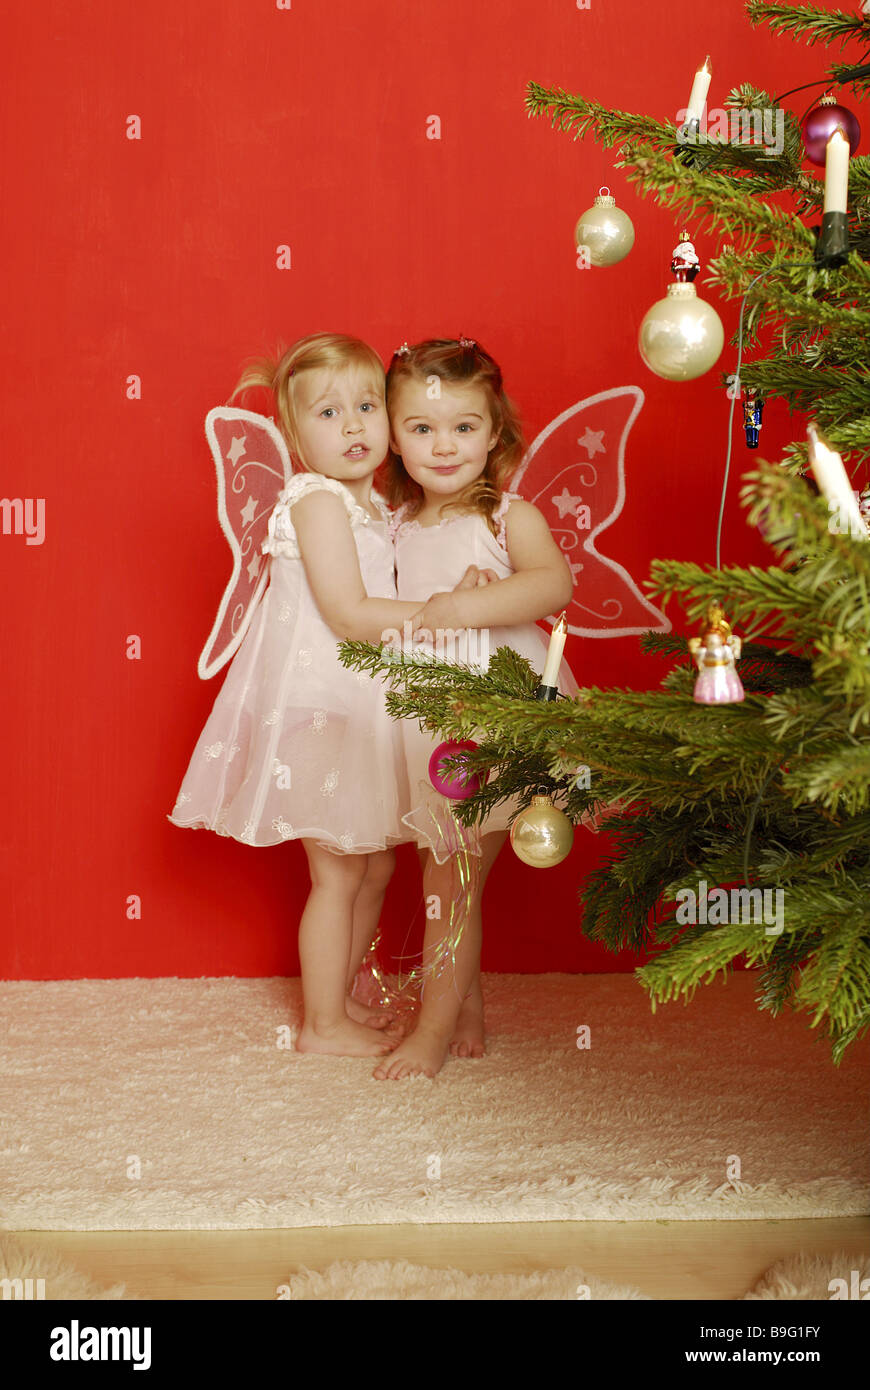 Weihnachten Mädchen zwei Verkleidung Engel Stern-Stab umarmen fröhlich  Serie Menschen Kinder Kleinkinder barfuß Kleidung Engelsflügel  Stockfotografie - Alamy